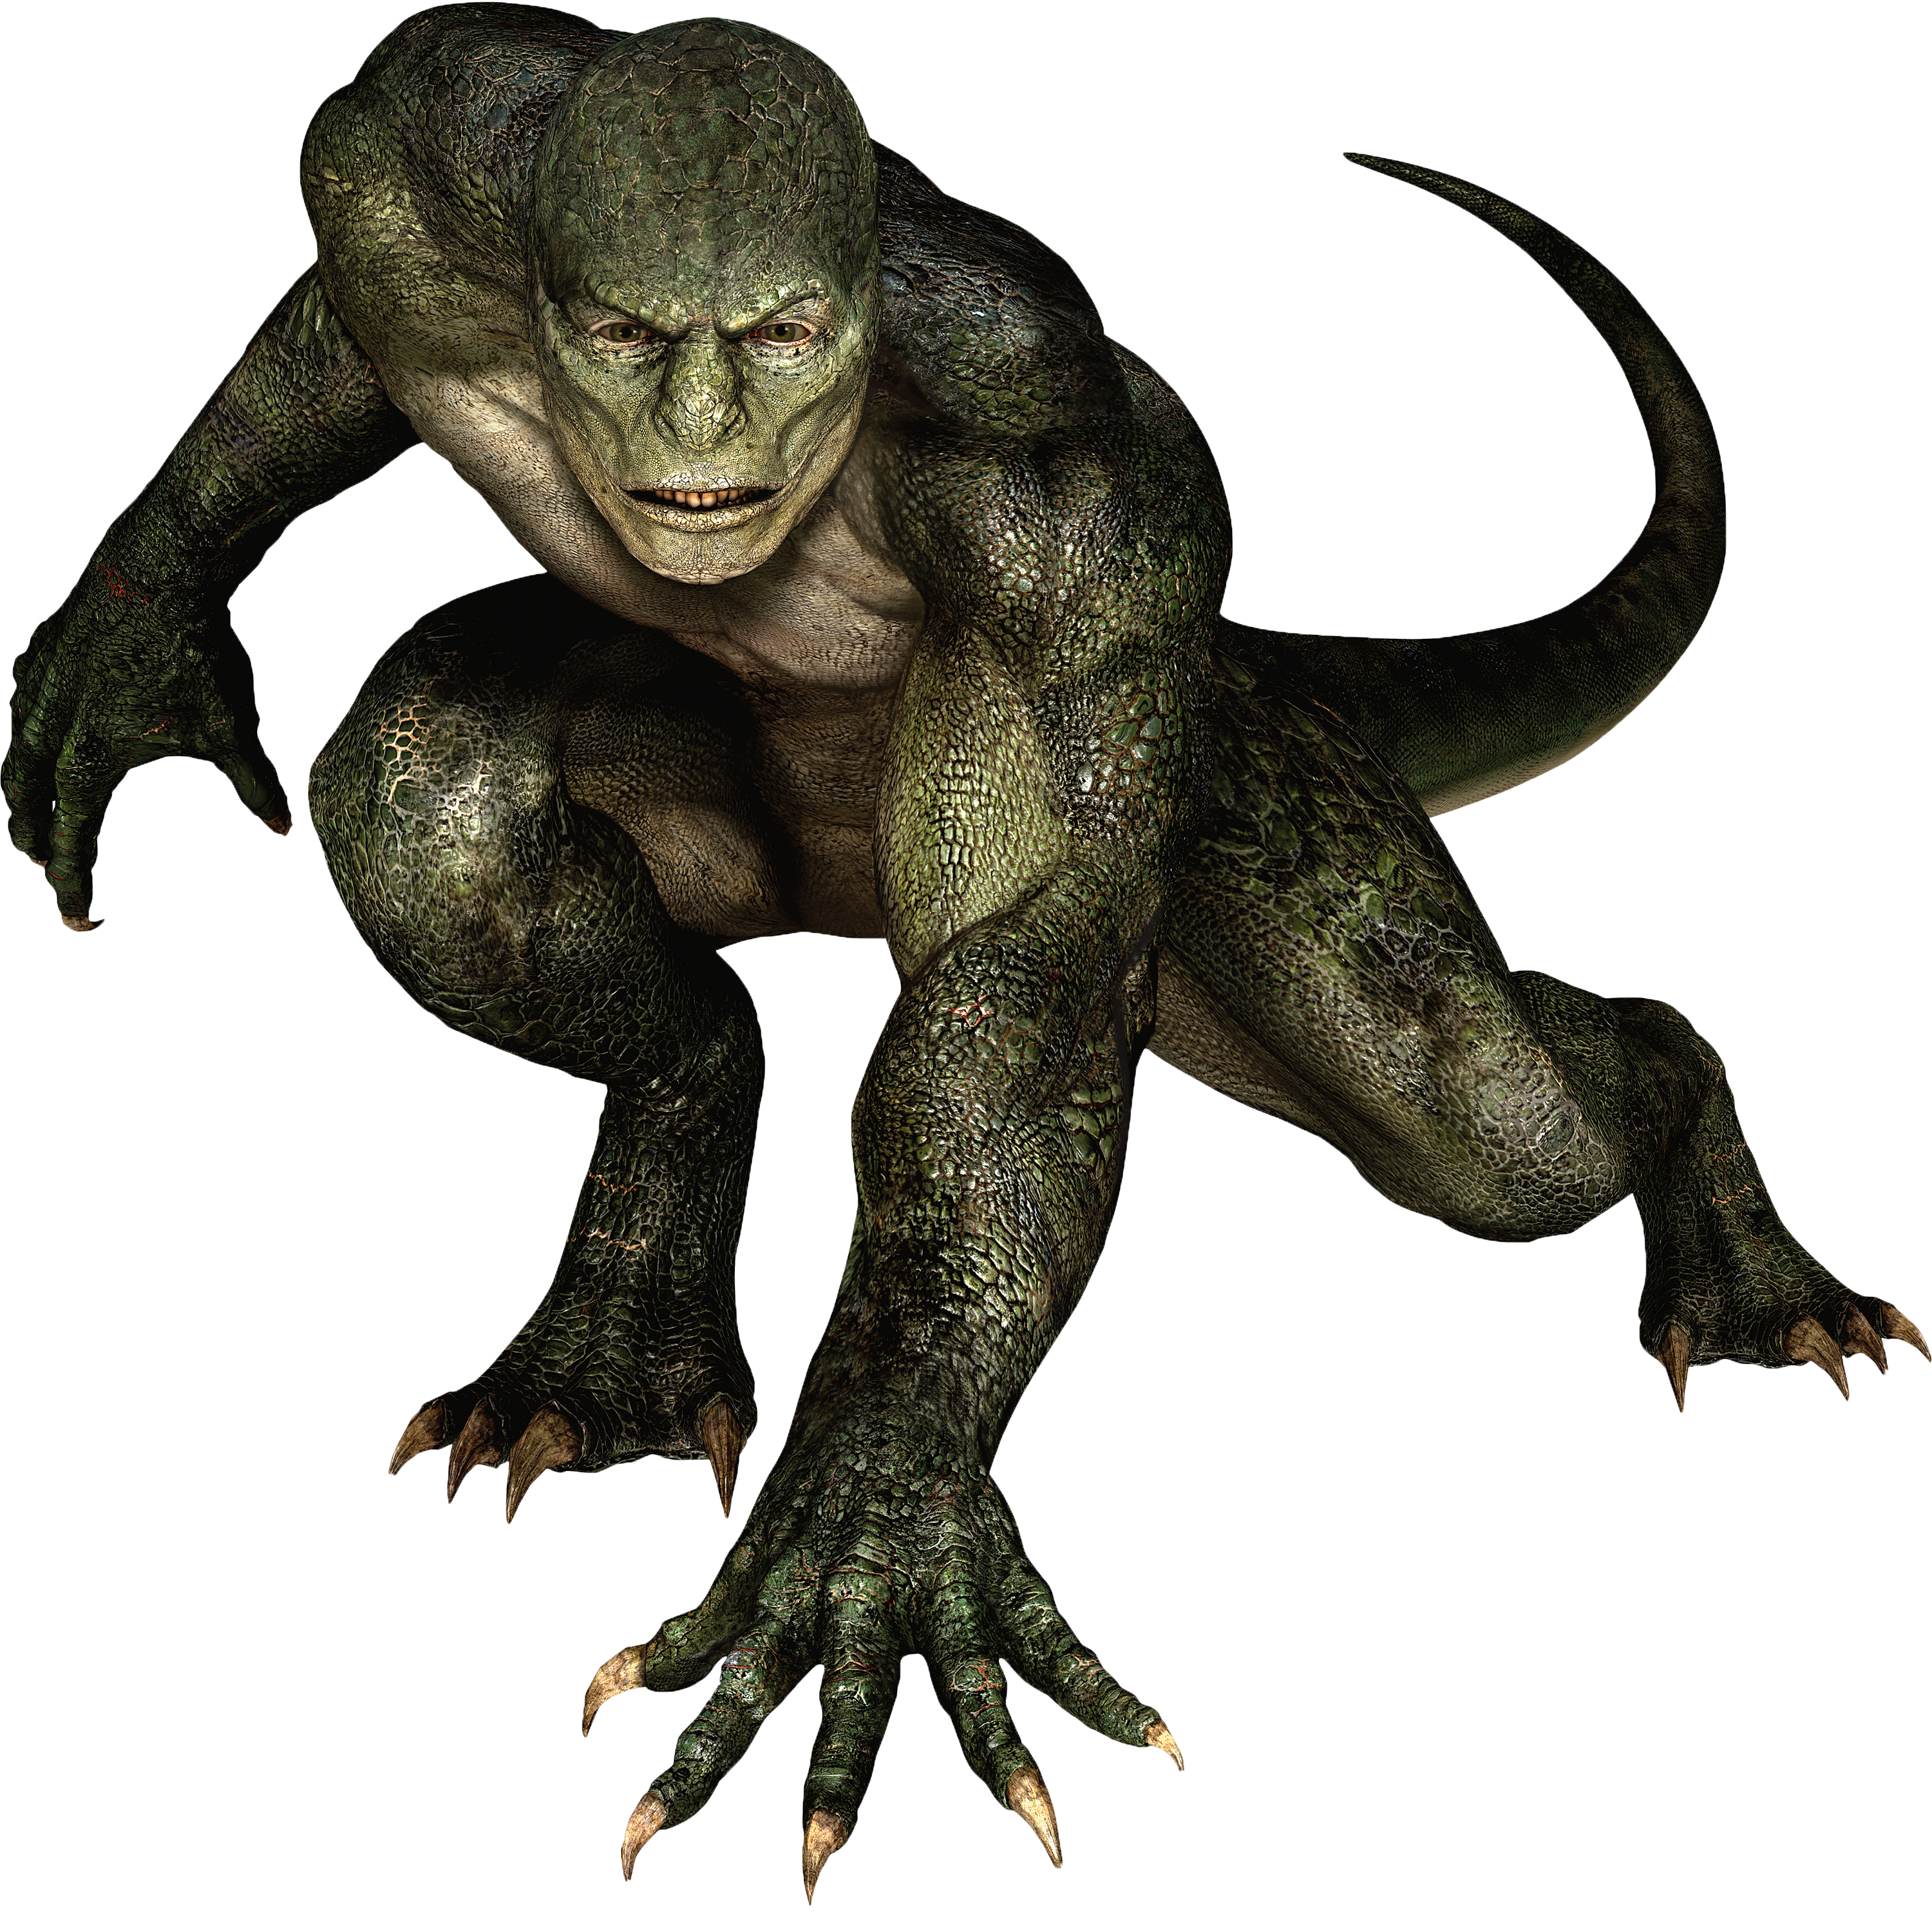 The Lizard | Amazing Spider-Man Wiki | FANDOM powered by Wikia